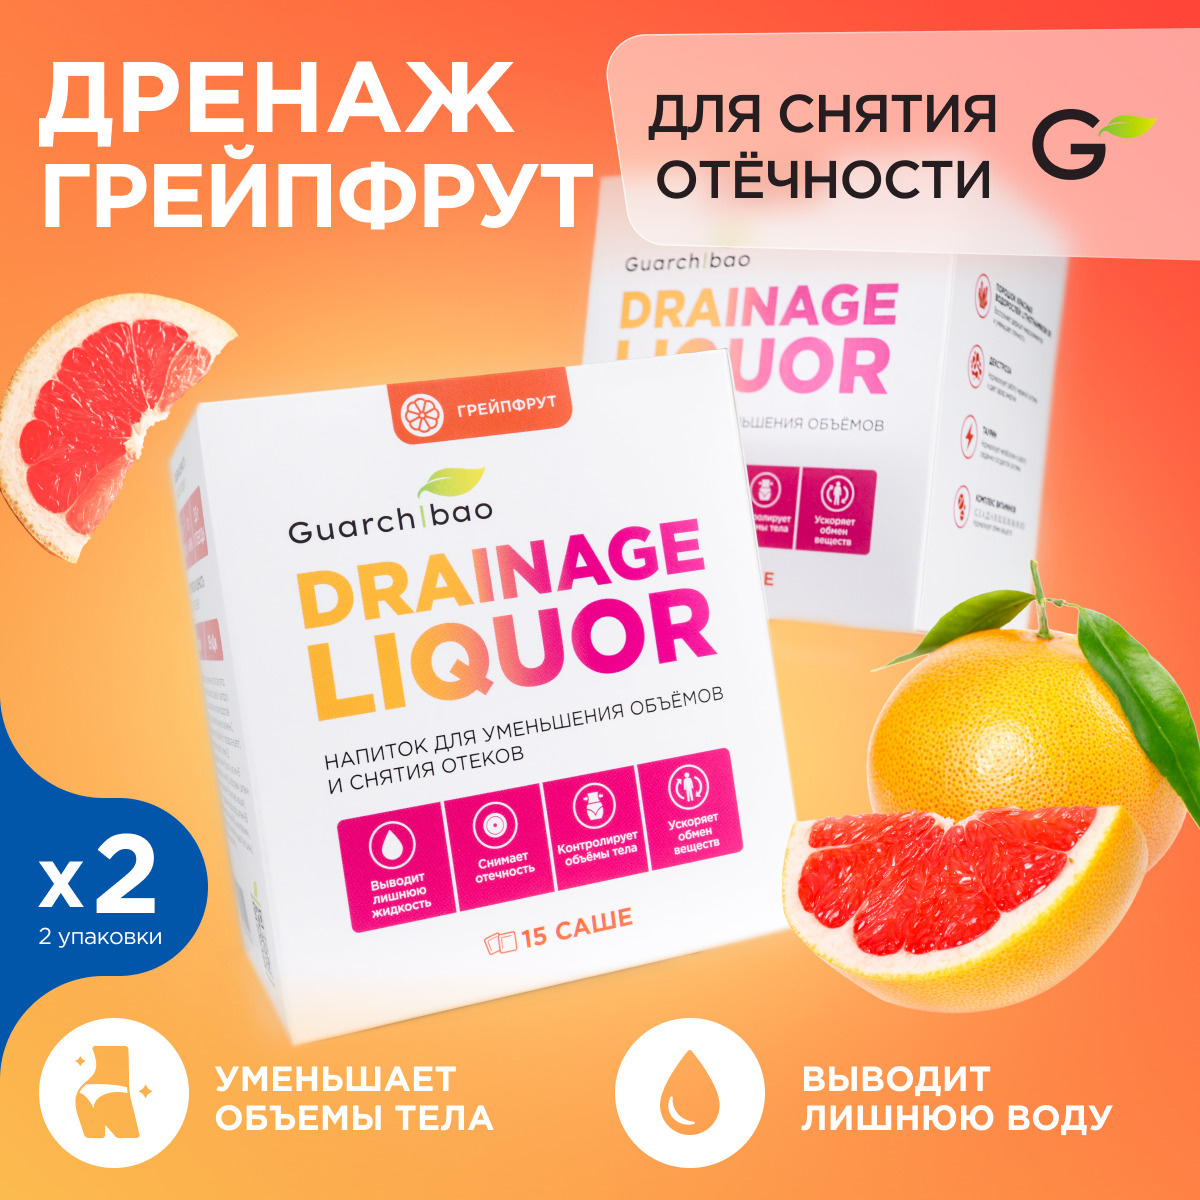 Дренажный напиток Guarchibao Drainage Liquor со вкусом Грейпфрут для снятия отеков и уменьшения объемов. #1